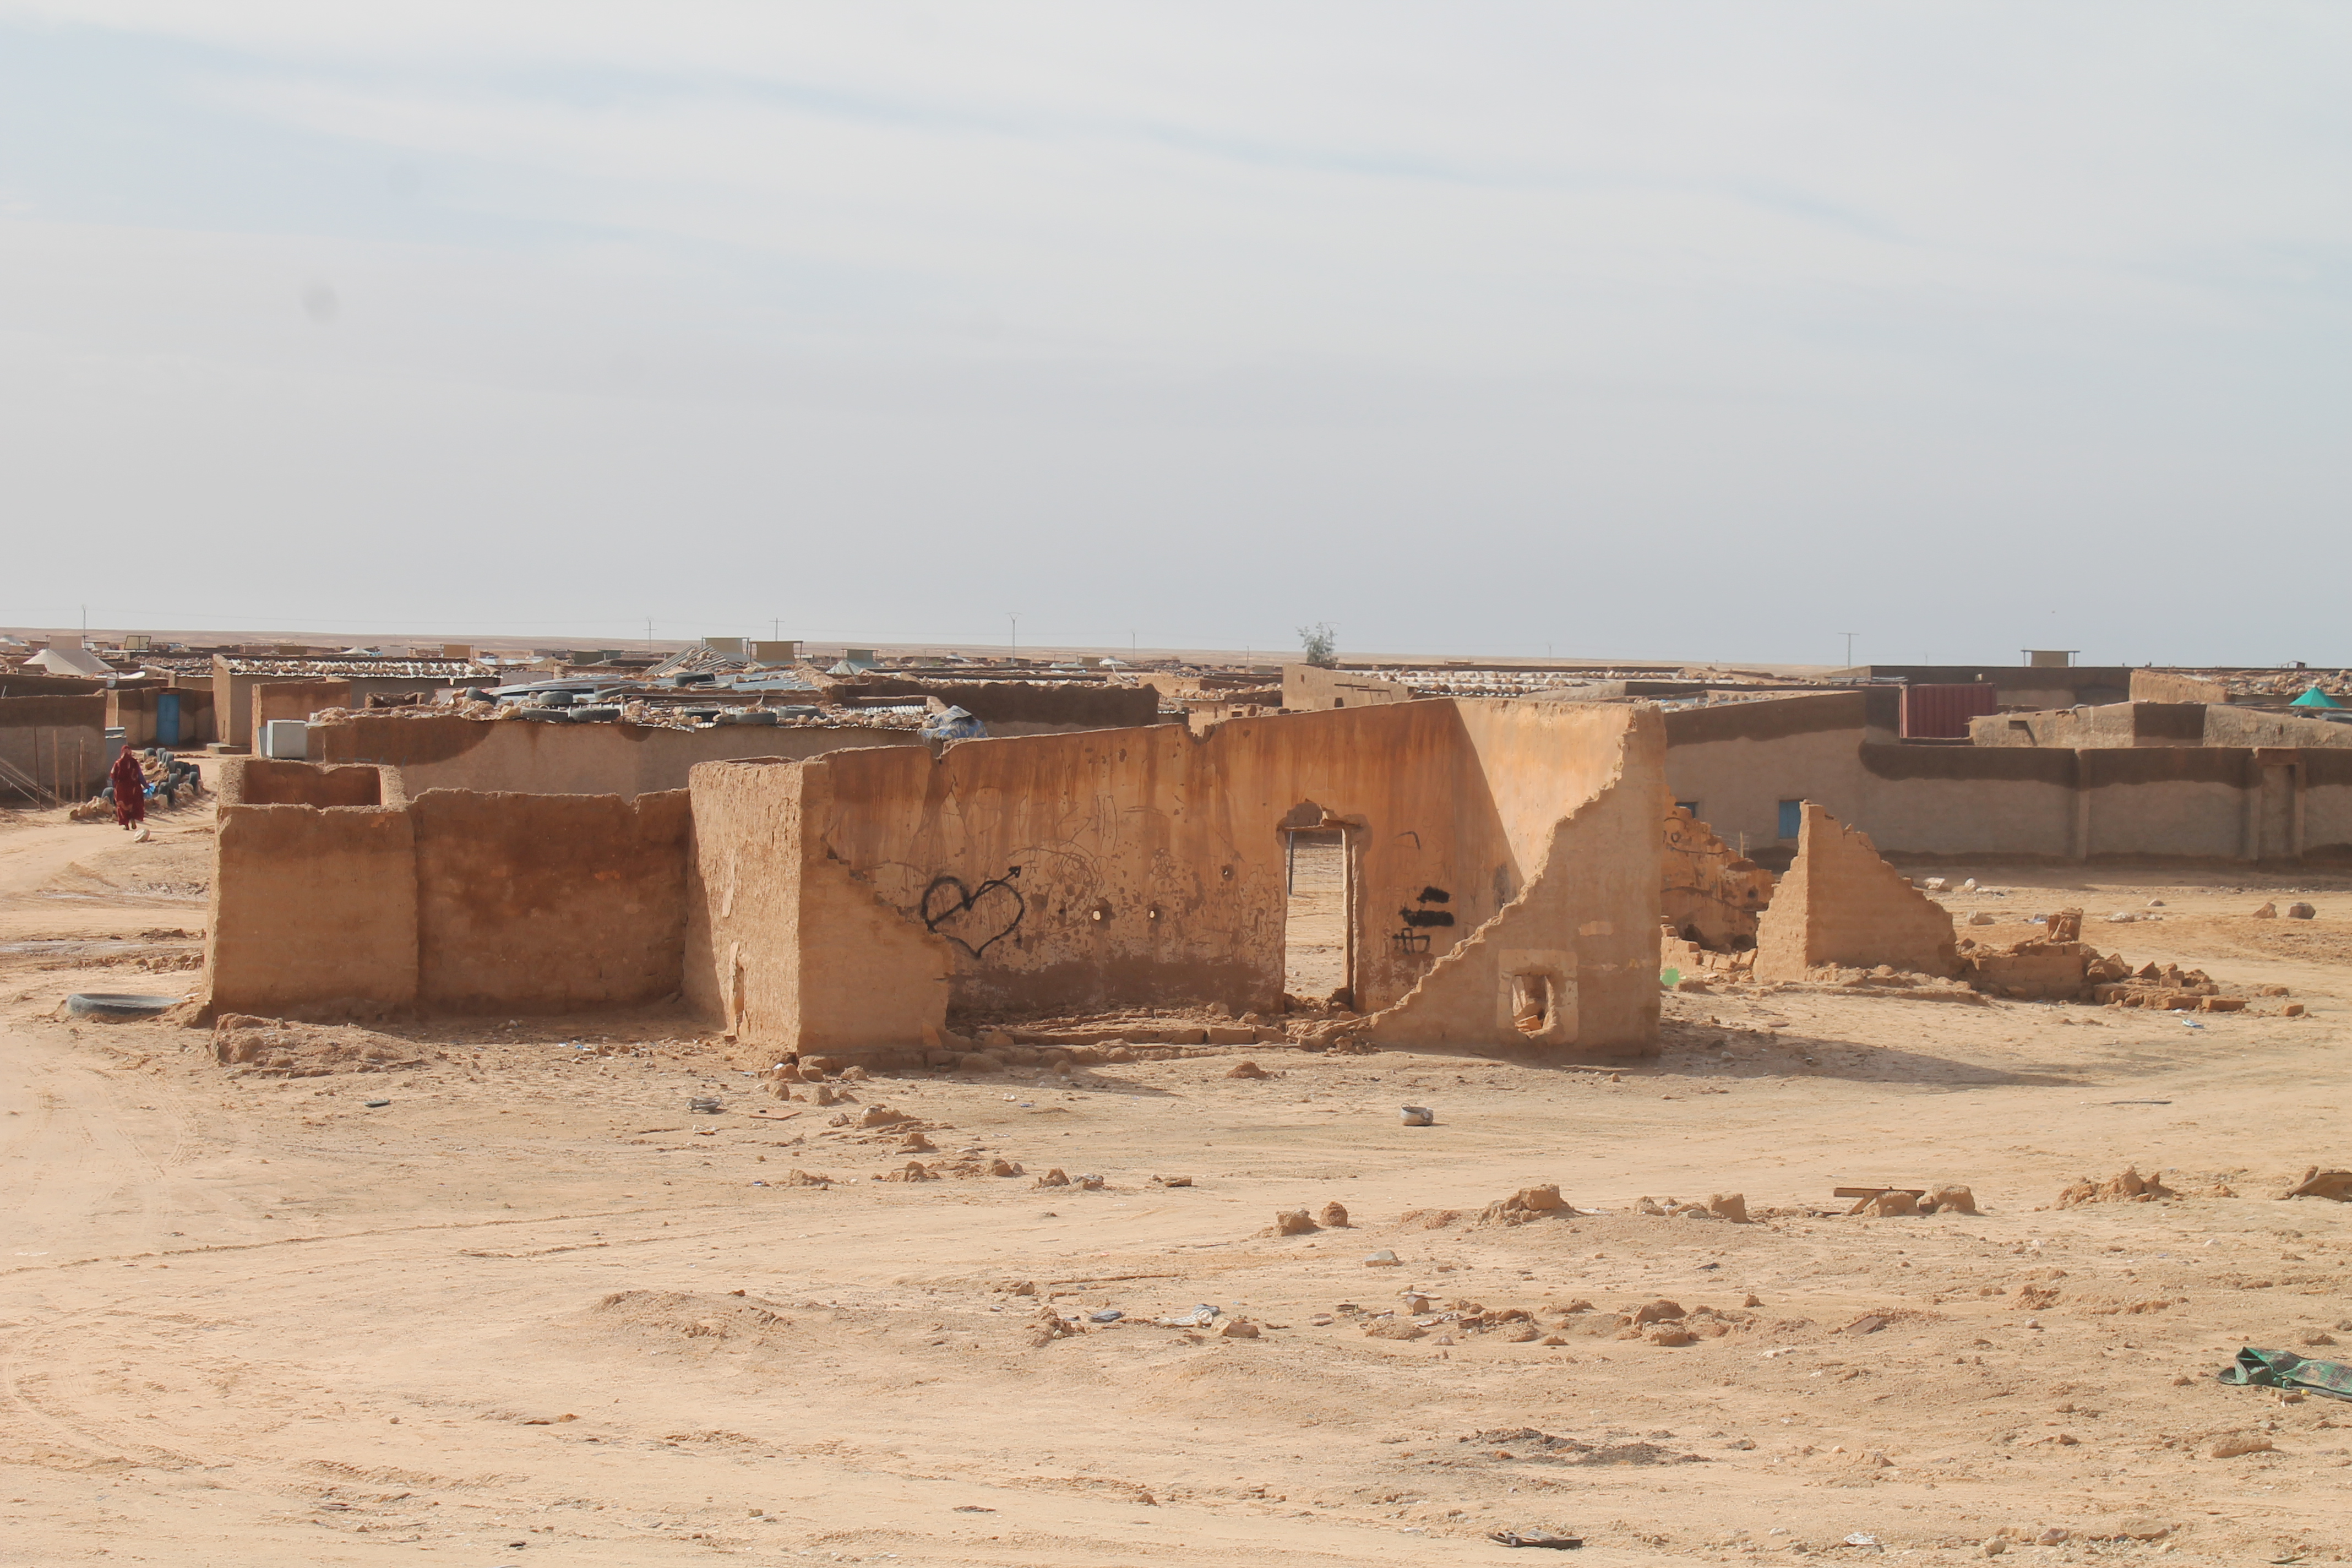 Le conseguenze della alluvione nel campo profughi saharawi